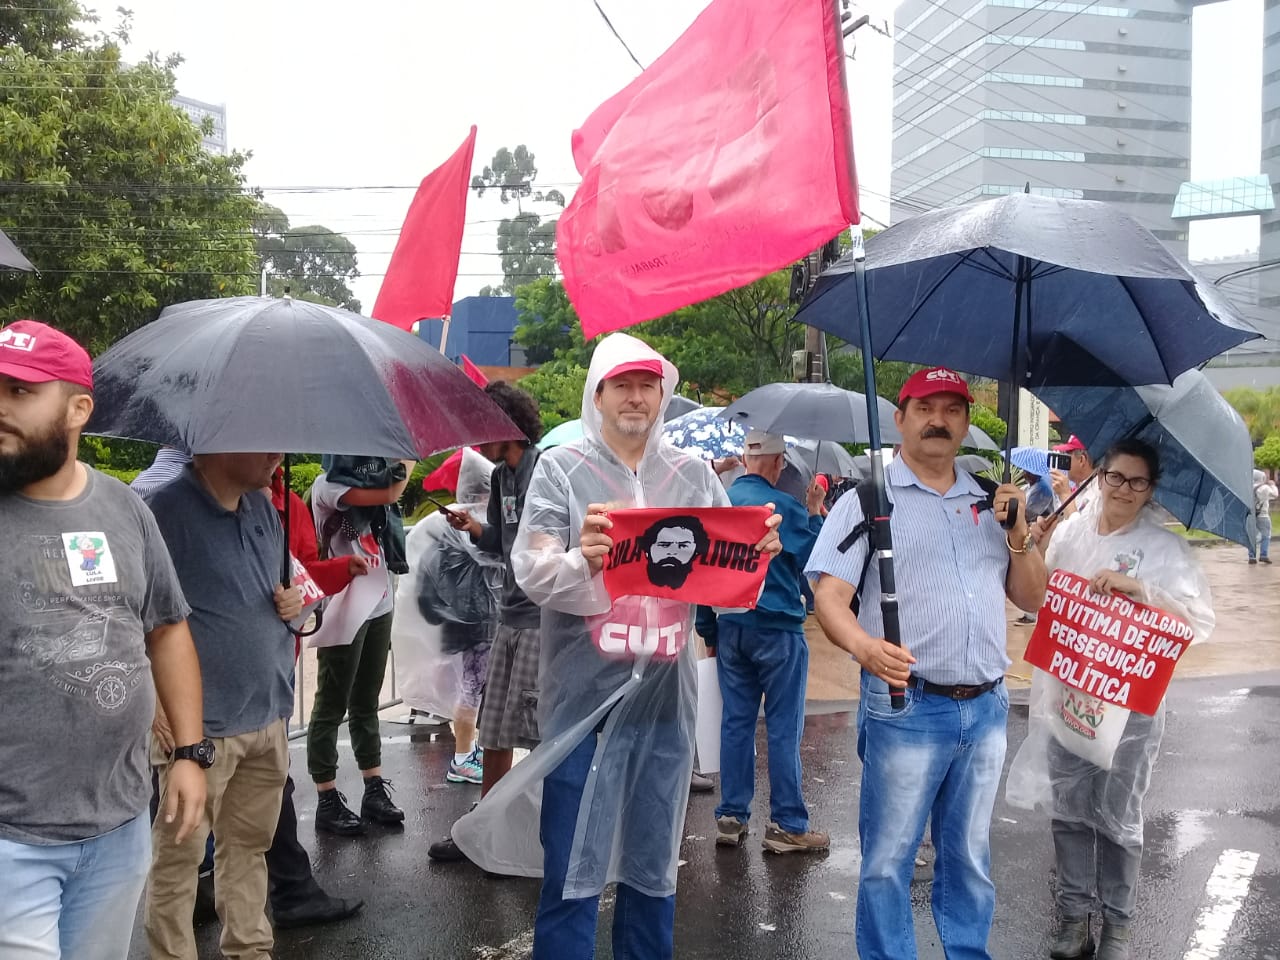 Veja fotos da manifestação pela inocência de Lula em frente ao TRF-4